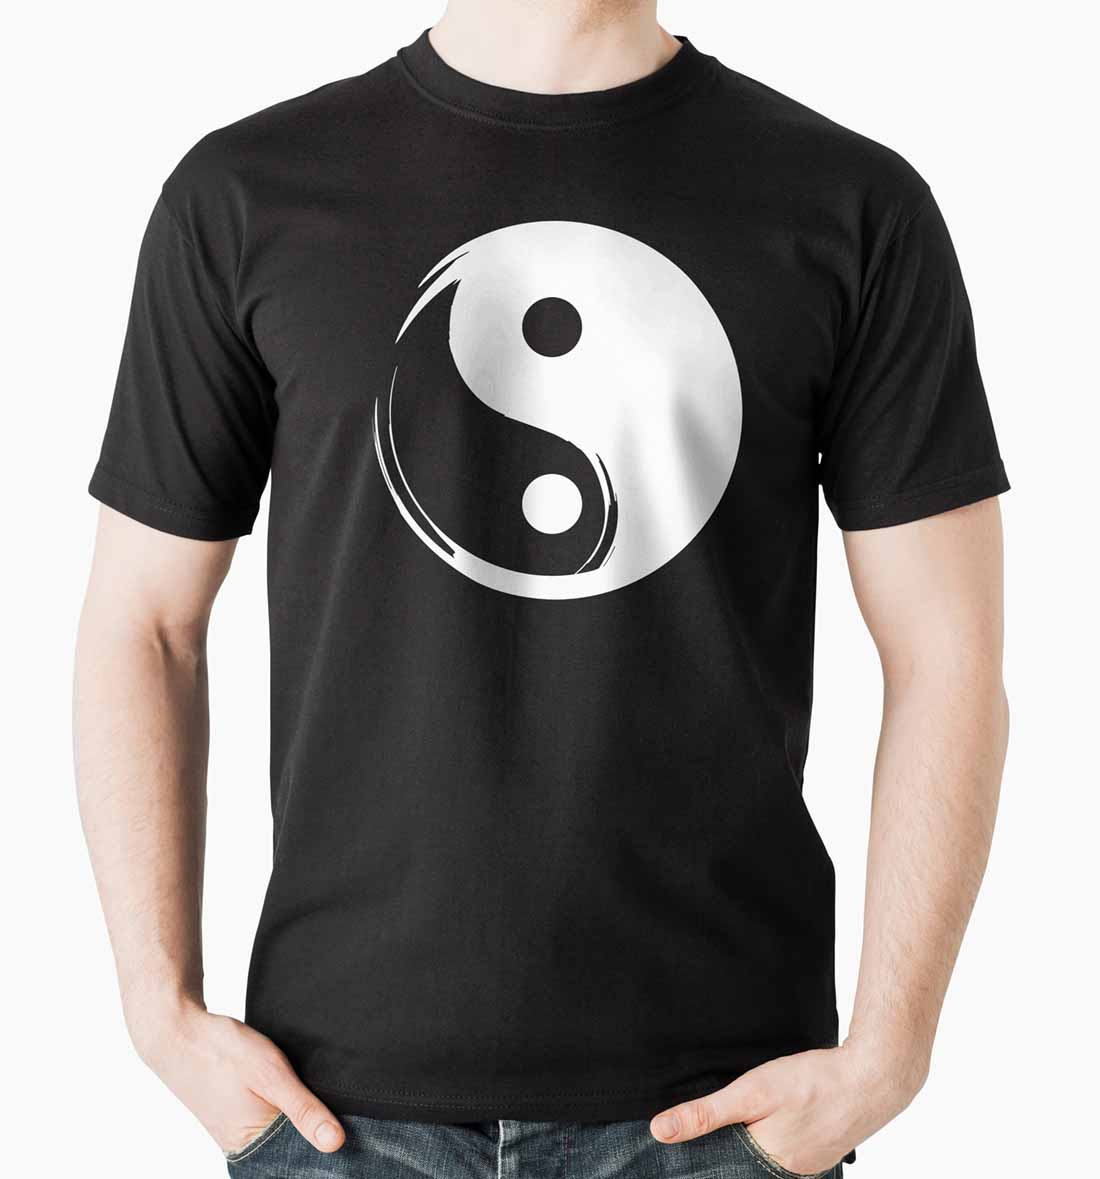 Yin and yang tshirt art